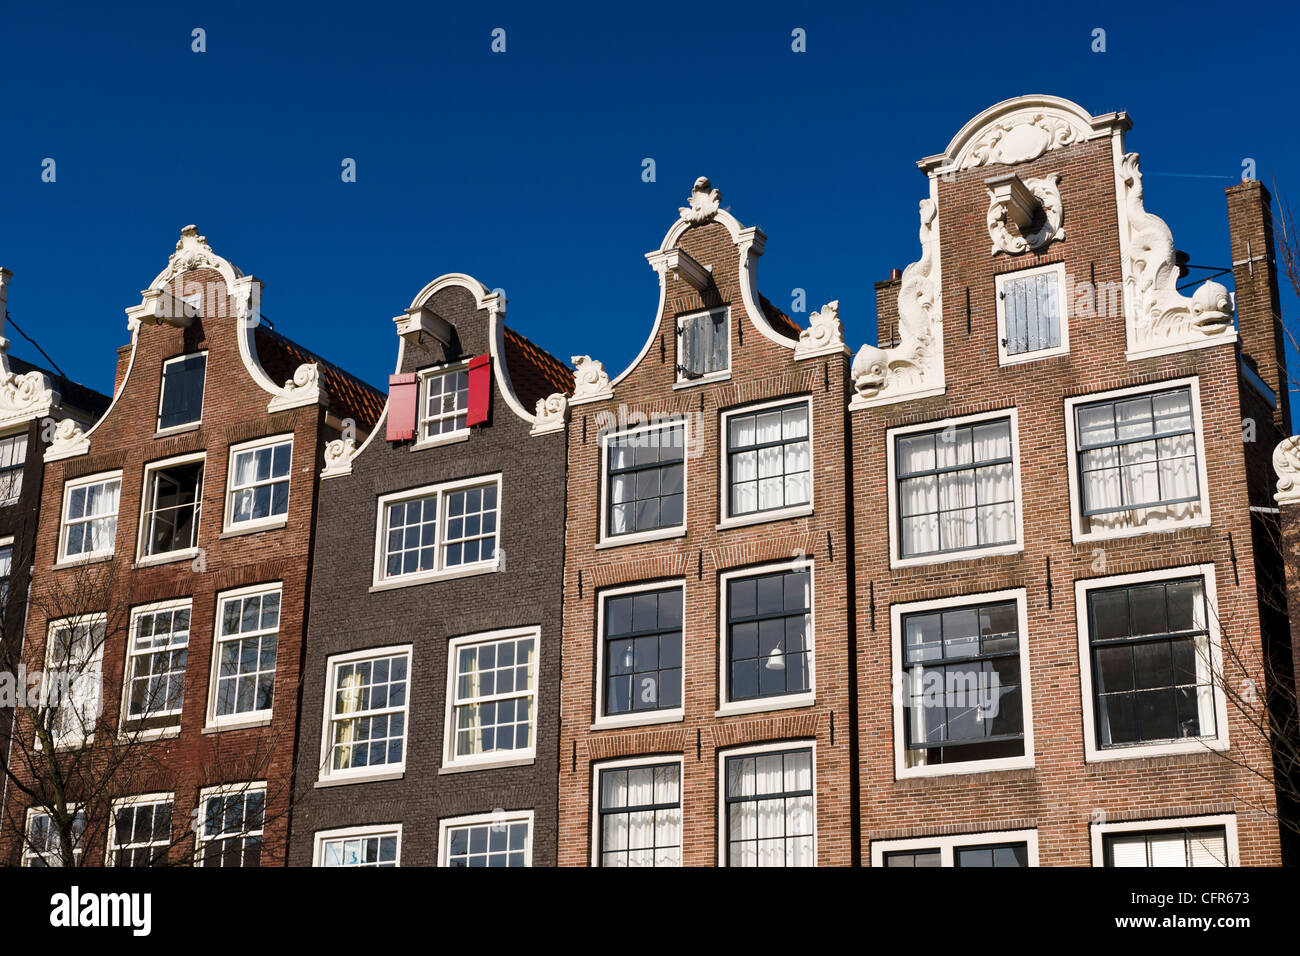 Holländische Giebel Häuser entlang der Brouwersgracht Kanal, Amsterdam, Niederlande. Stockfoto